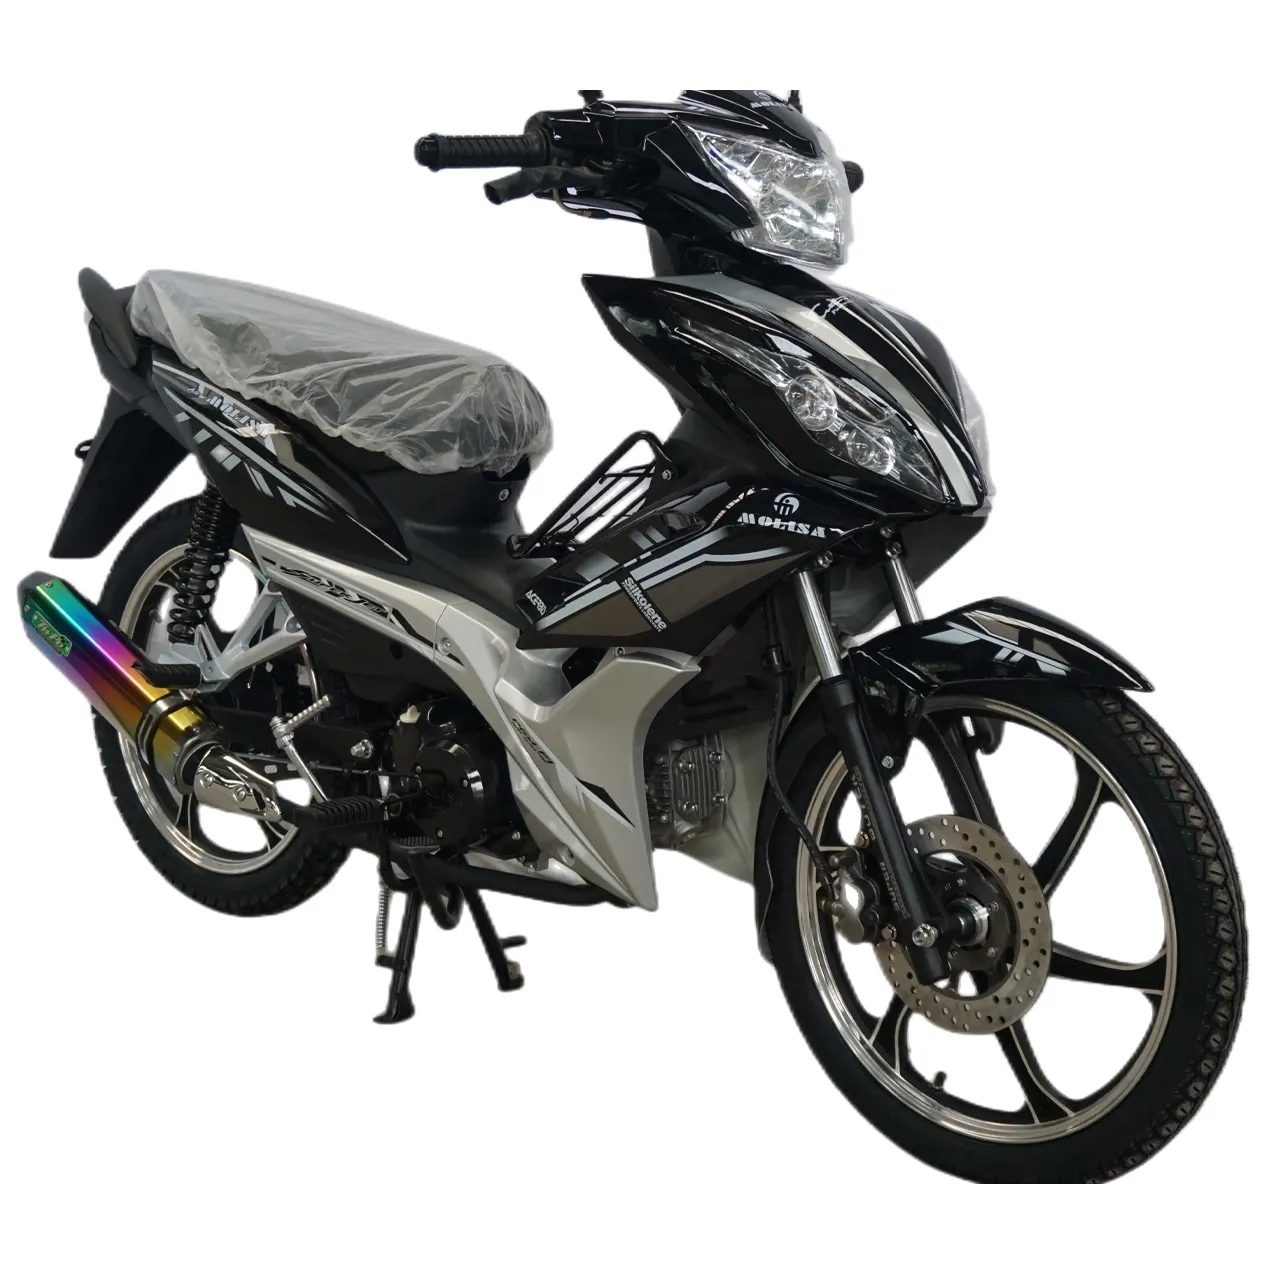 Ot-motor horizontal de 4 tiempos para motocicleta, pieza de alta calidad con diseño a la moda de 110 CC